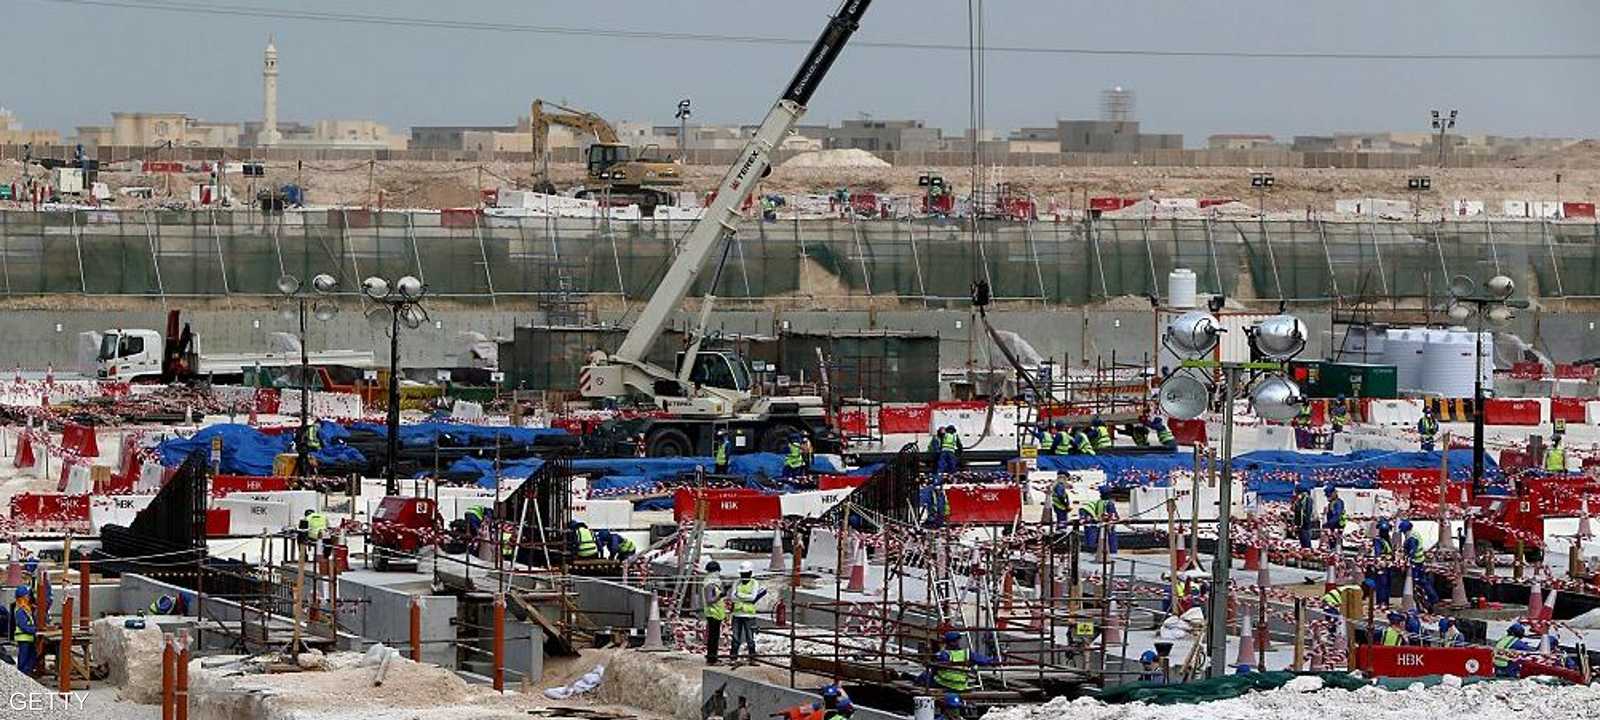 صورة أرشيفية لعملية بناء استاد في قطر